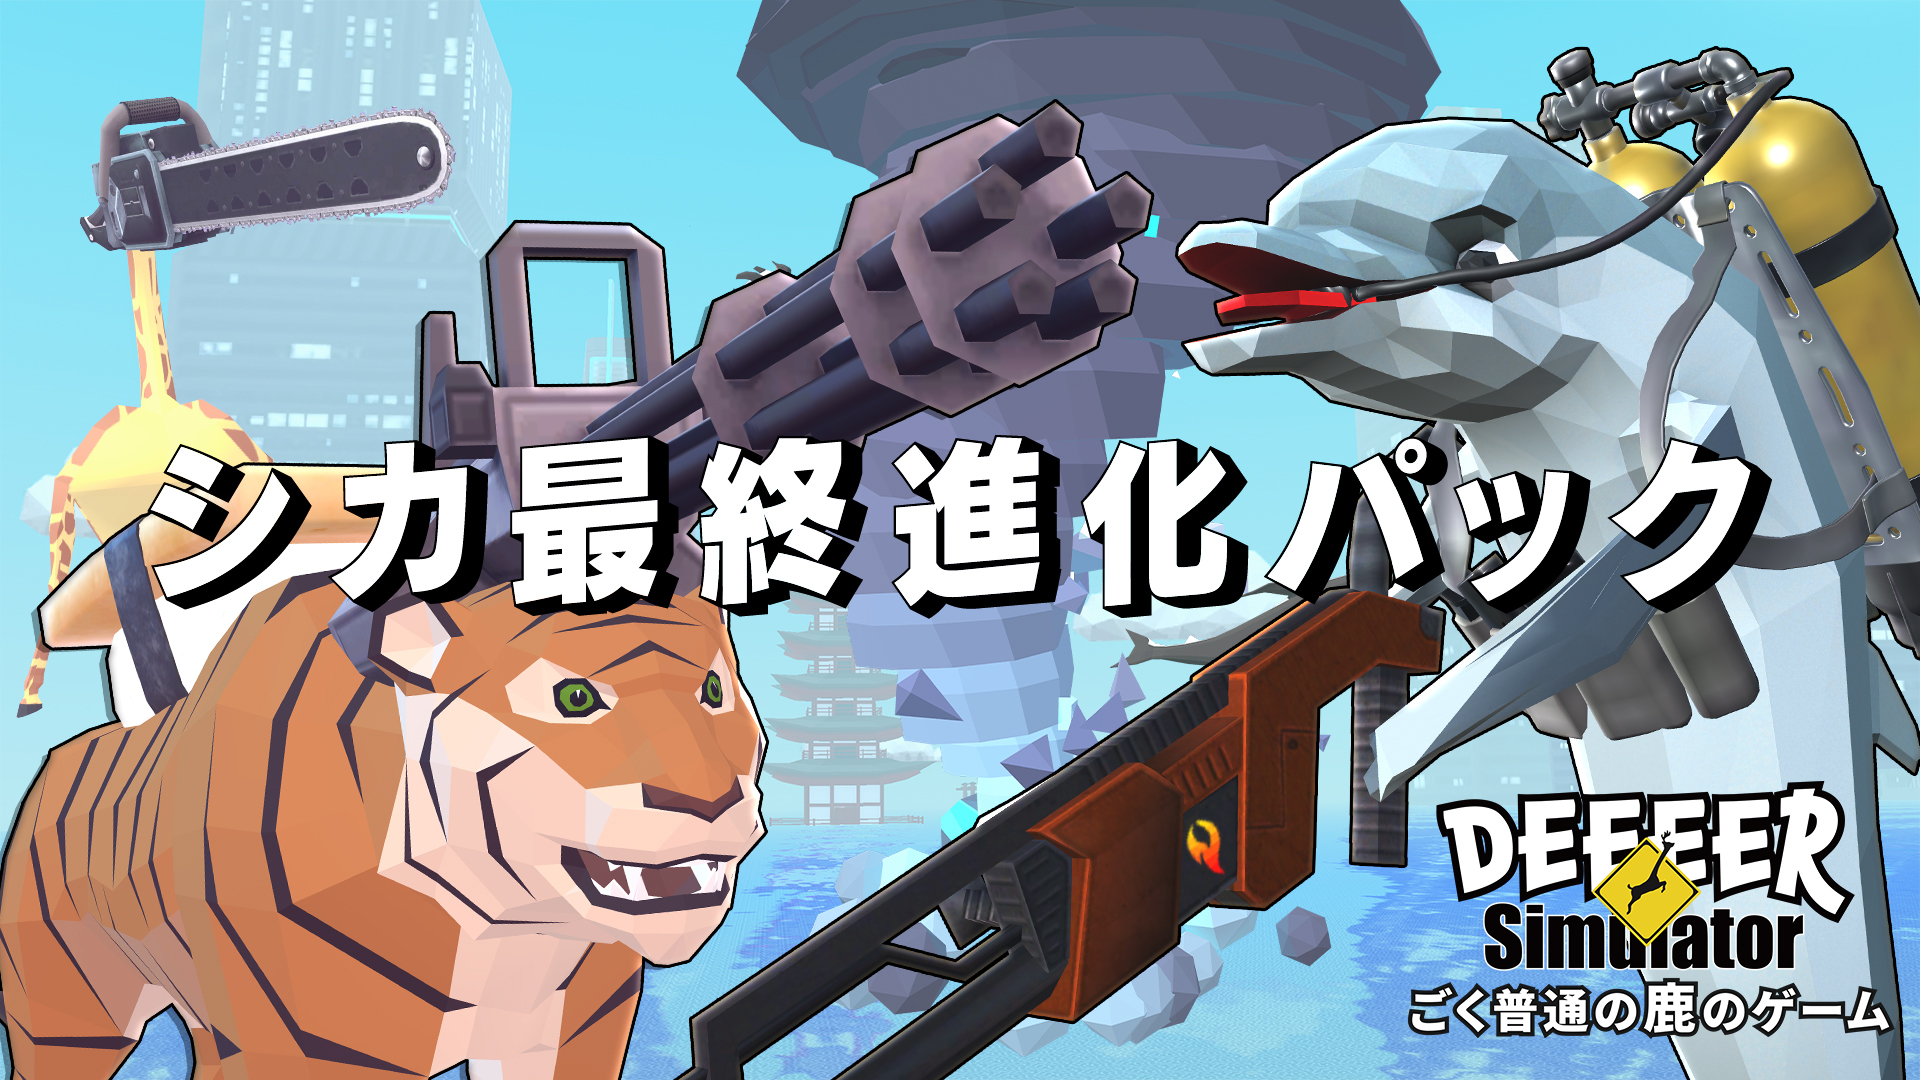 『ごく普通の鹿のゲーム DEEEER Simulator』 ニンテンドーe ショップにてダウンロード版予約開始！